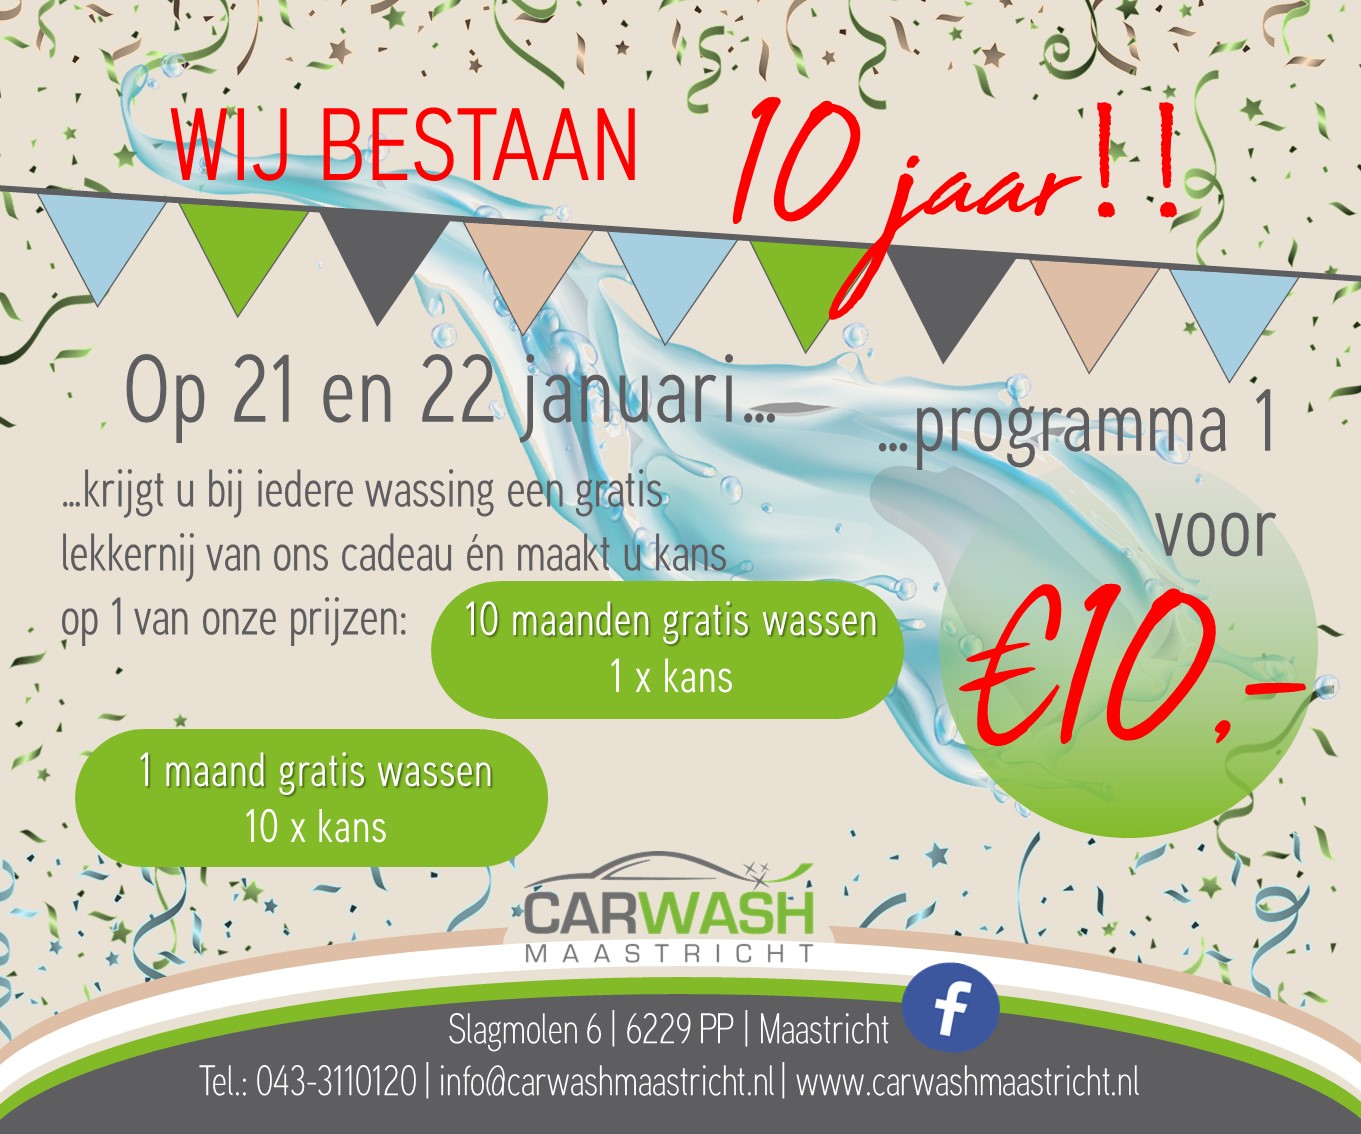 Carwash Maastricht 10 jaar